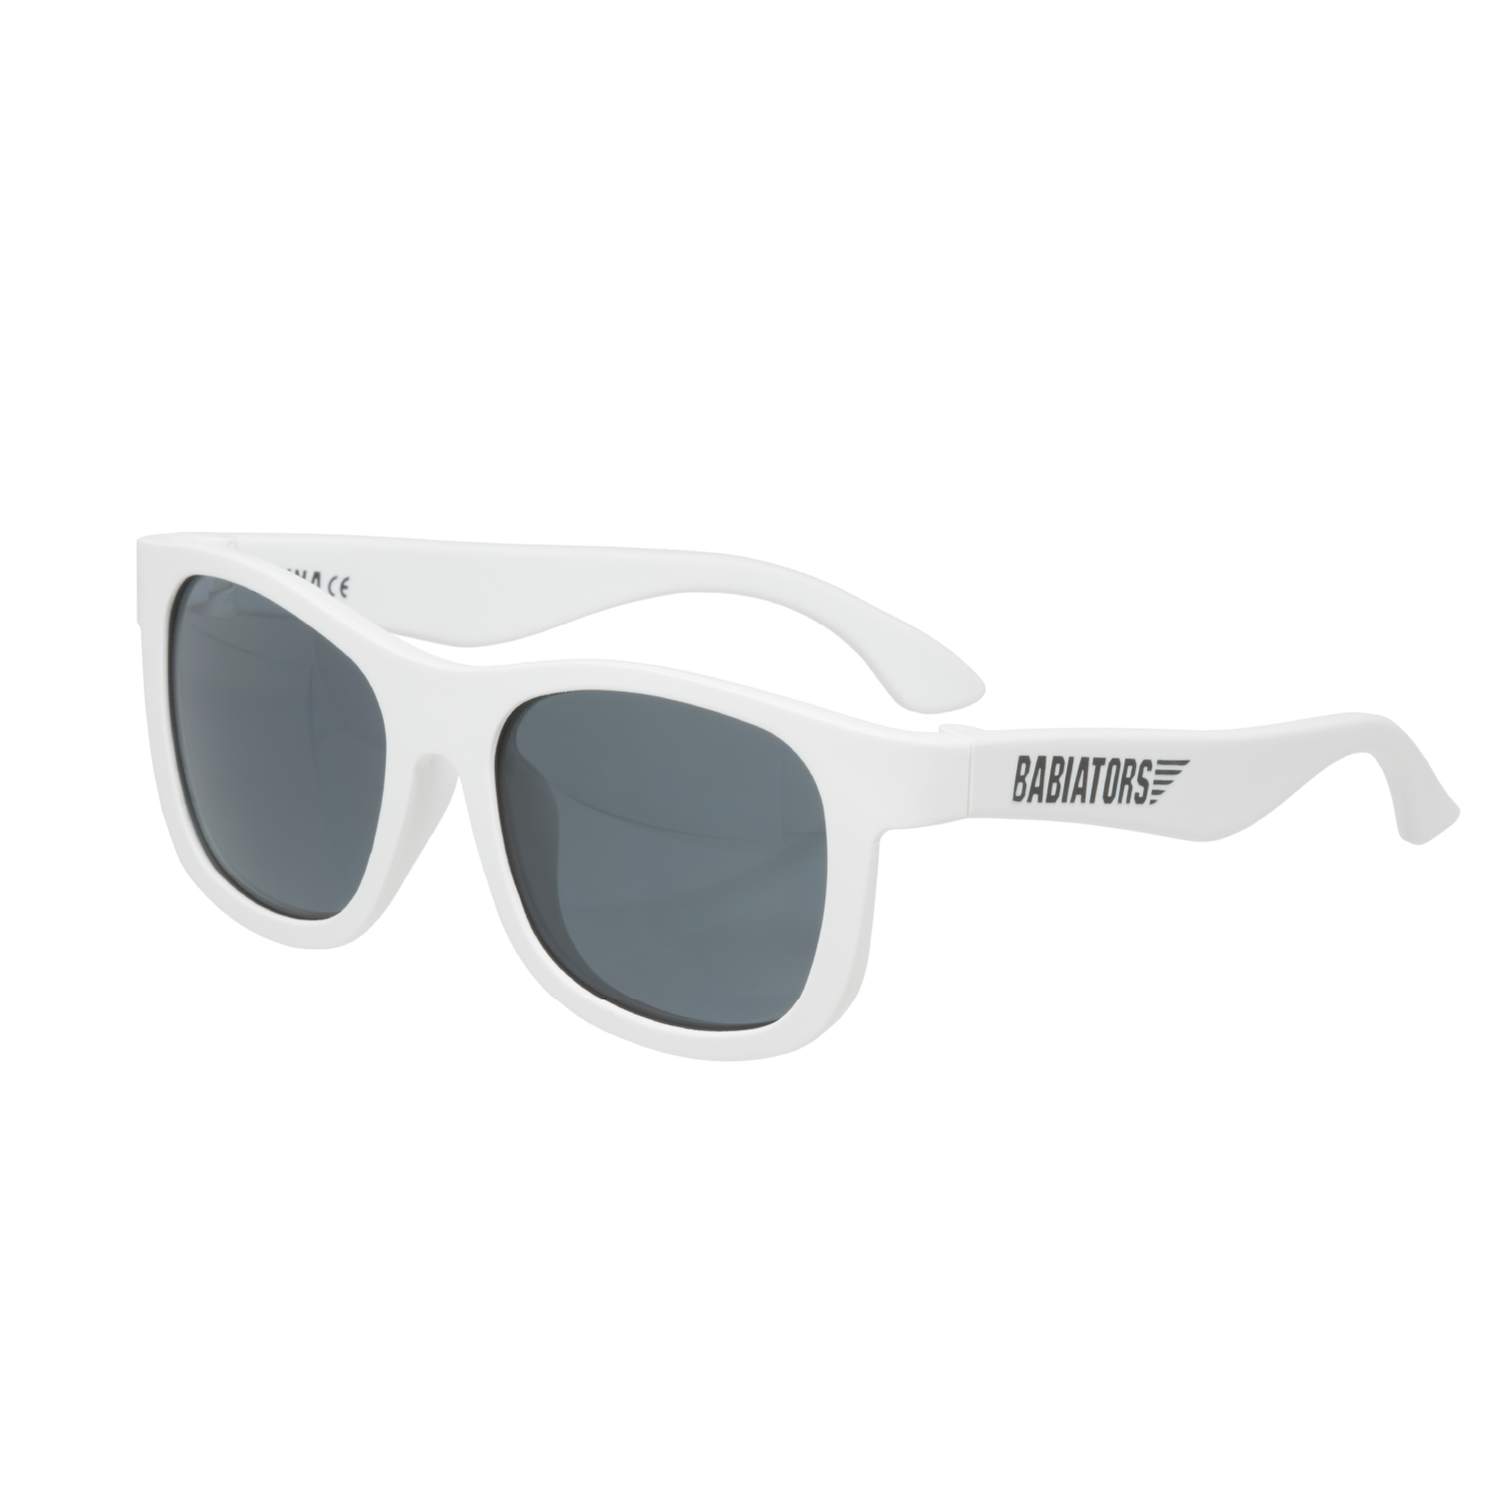 Детские солнцезащитные очки Babiators Navigator Шаловливый белый 6+ лет NAV-034 - фото 1